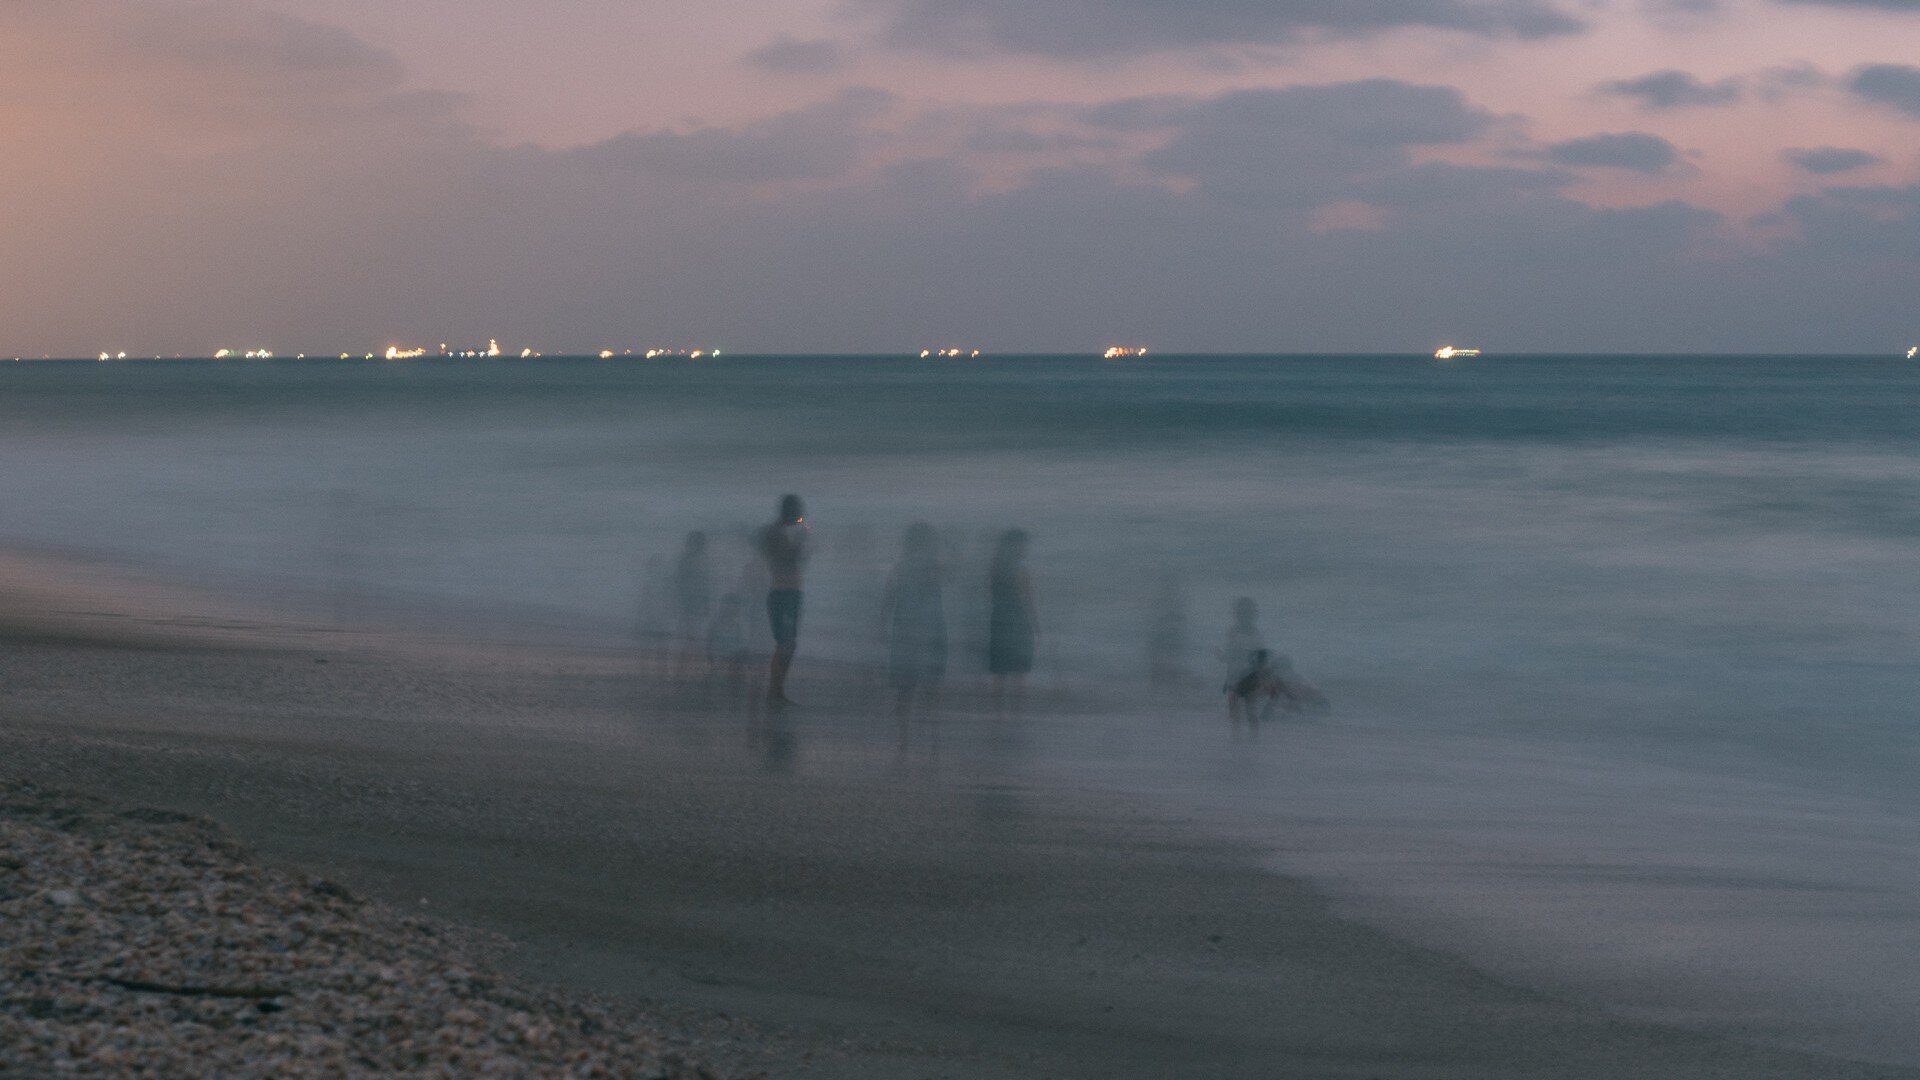 August 22. Israel, Palmachim Beach